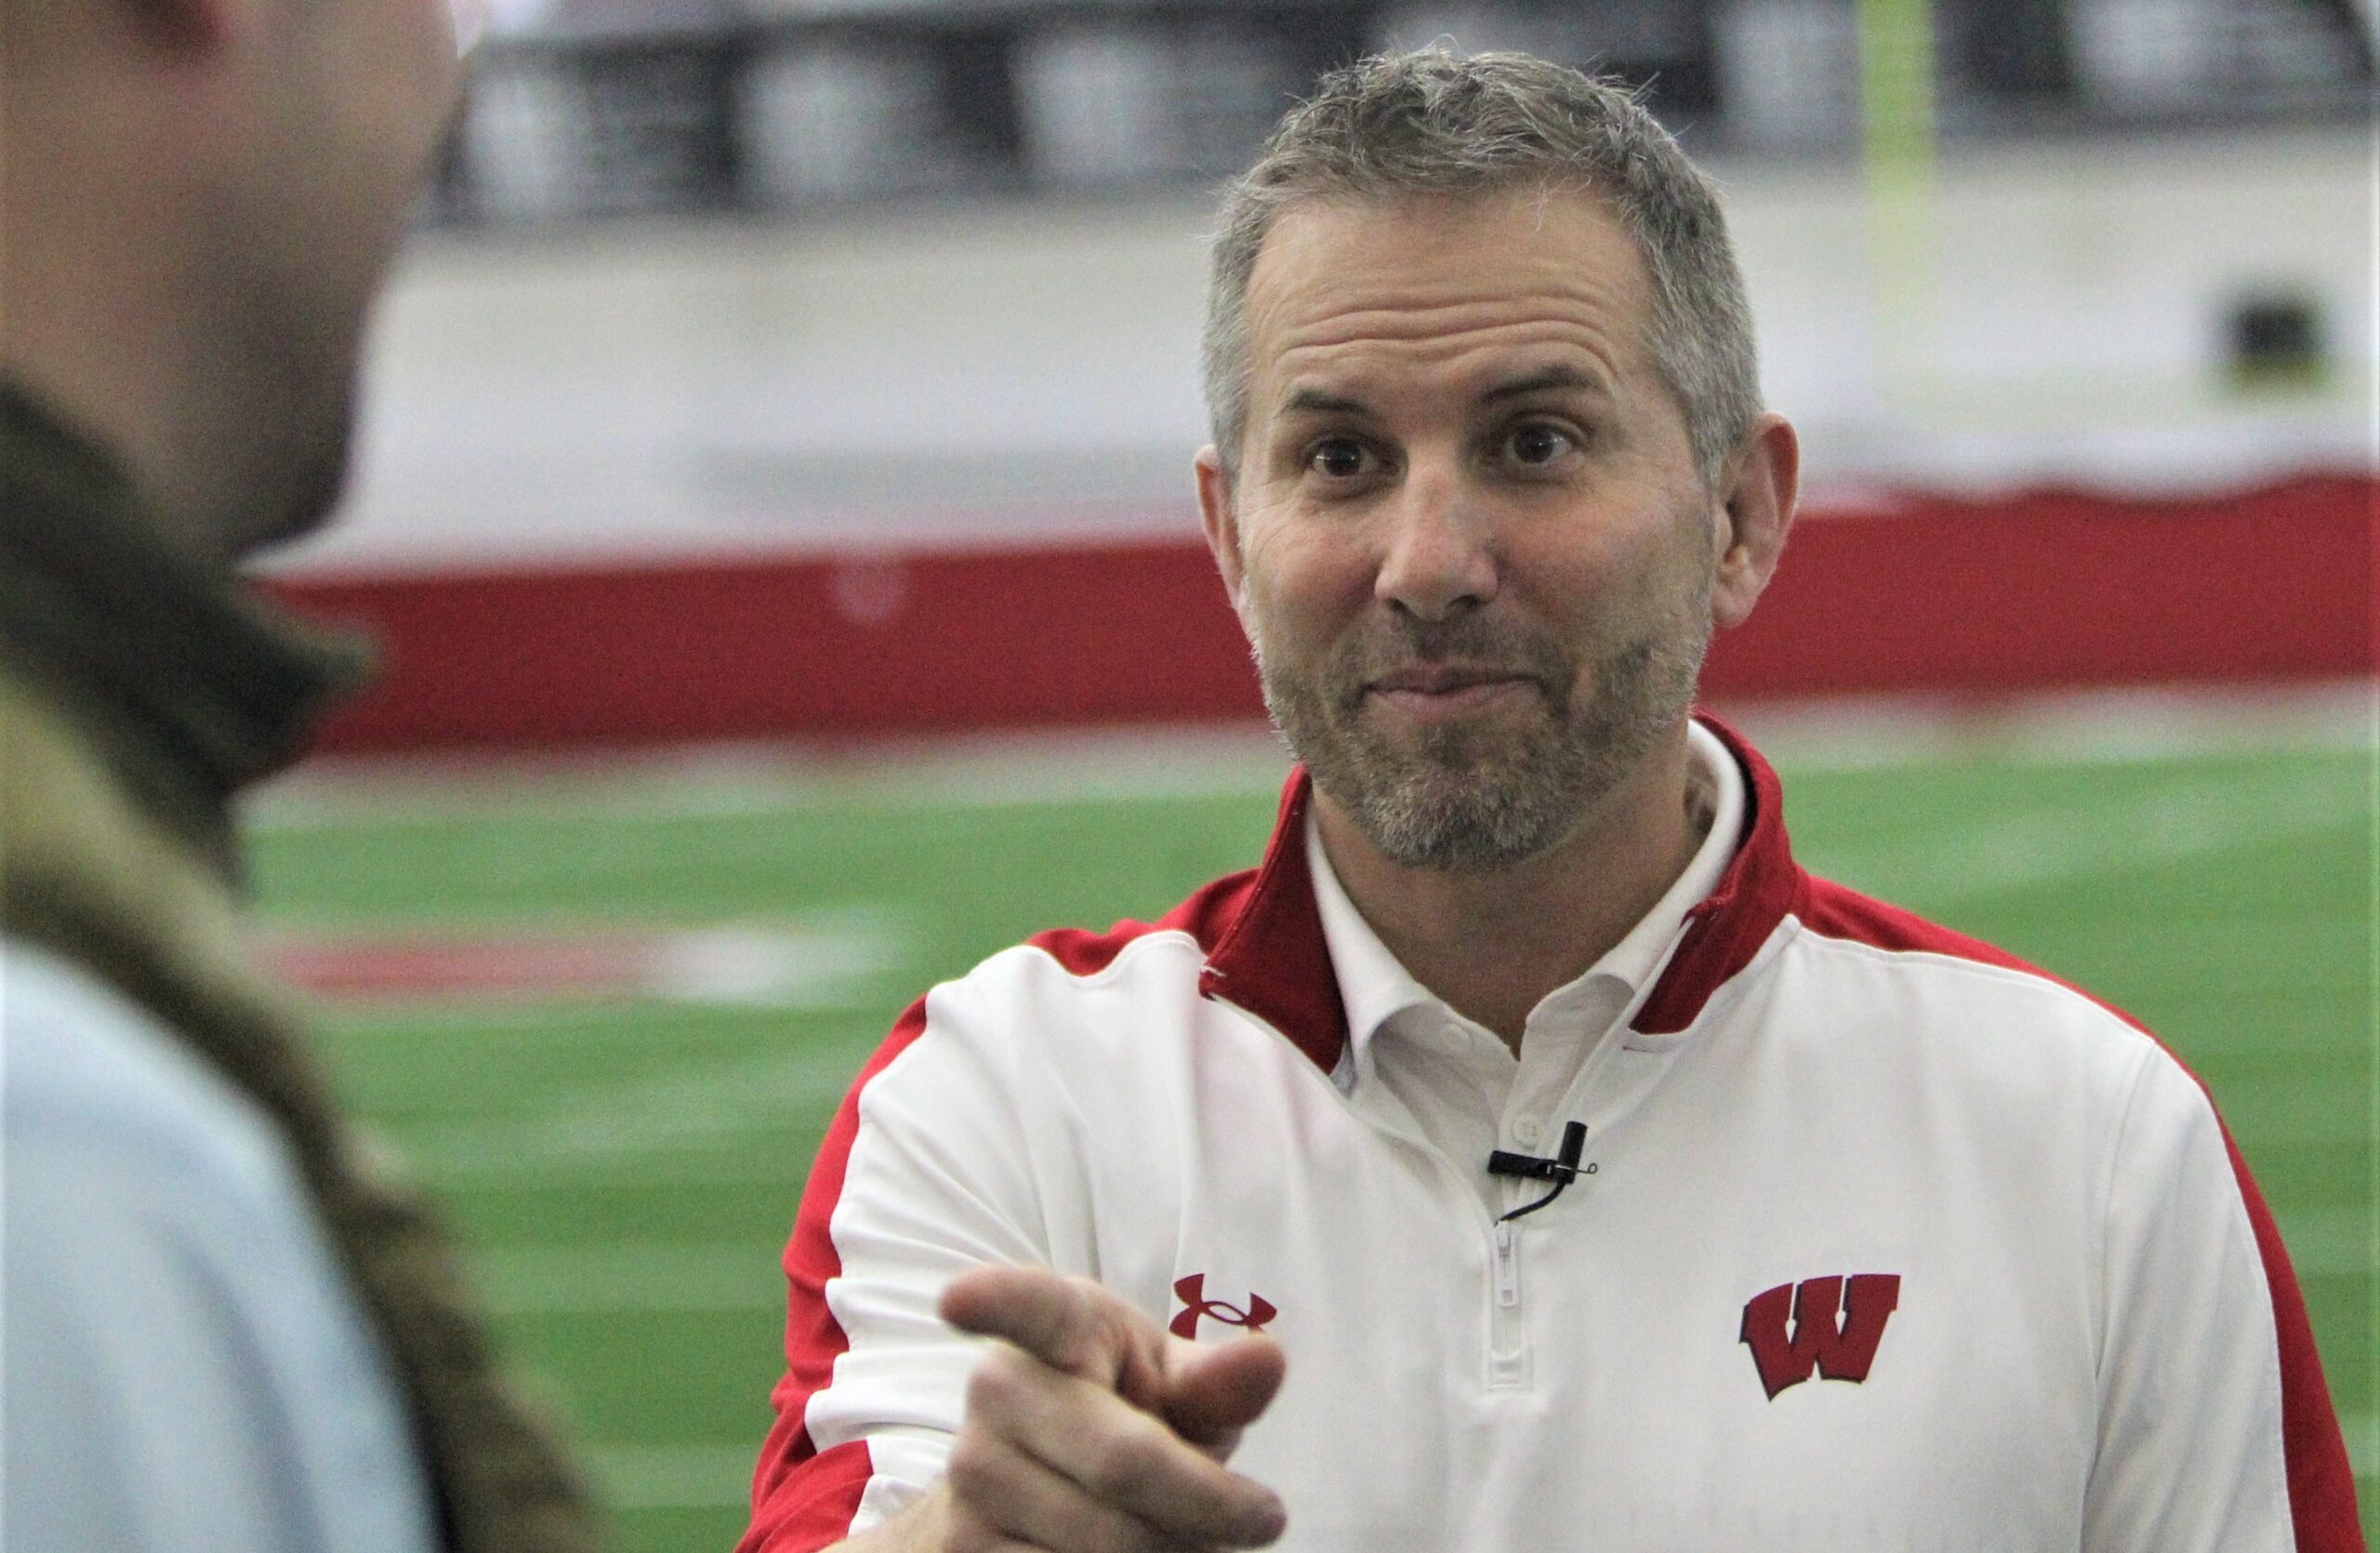 Wisconsin Football defensive coordinator Mike Tressel